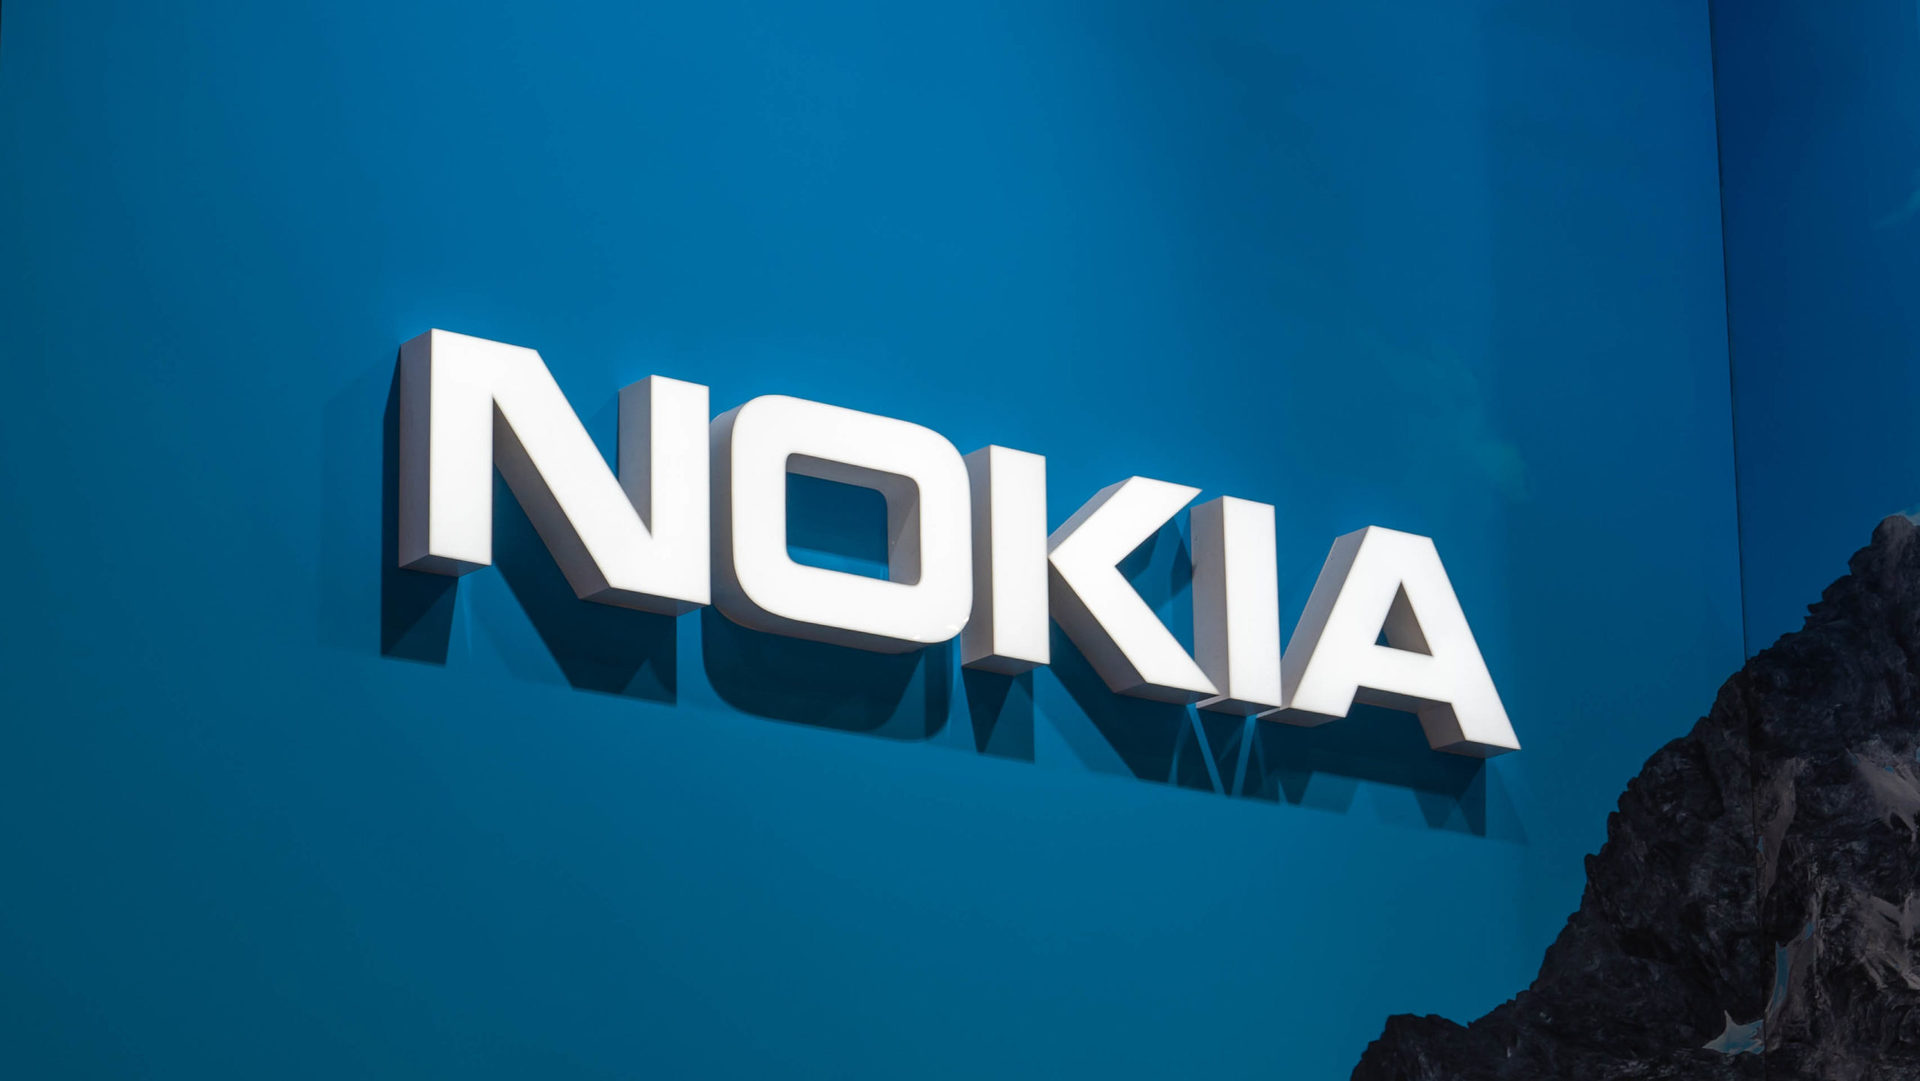 Nokia logo on blue wall - MWC